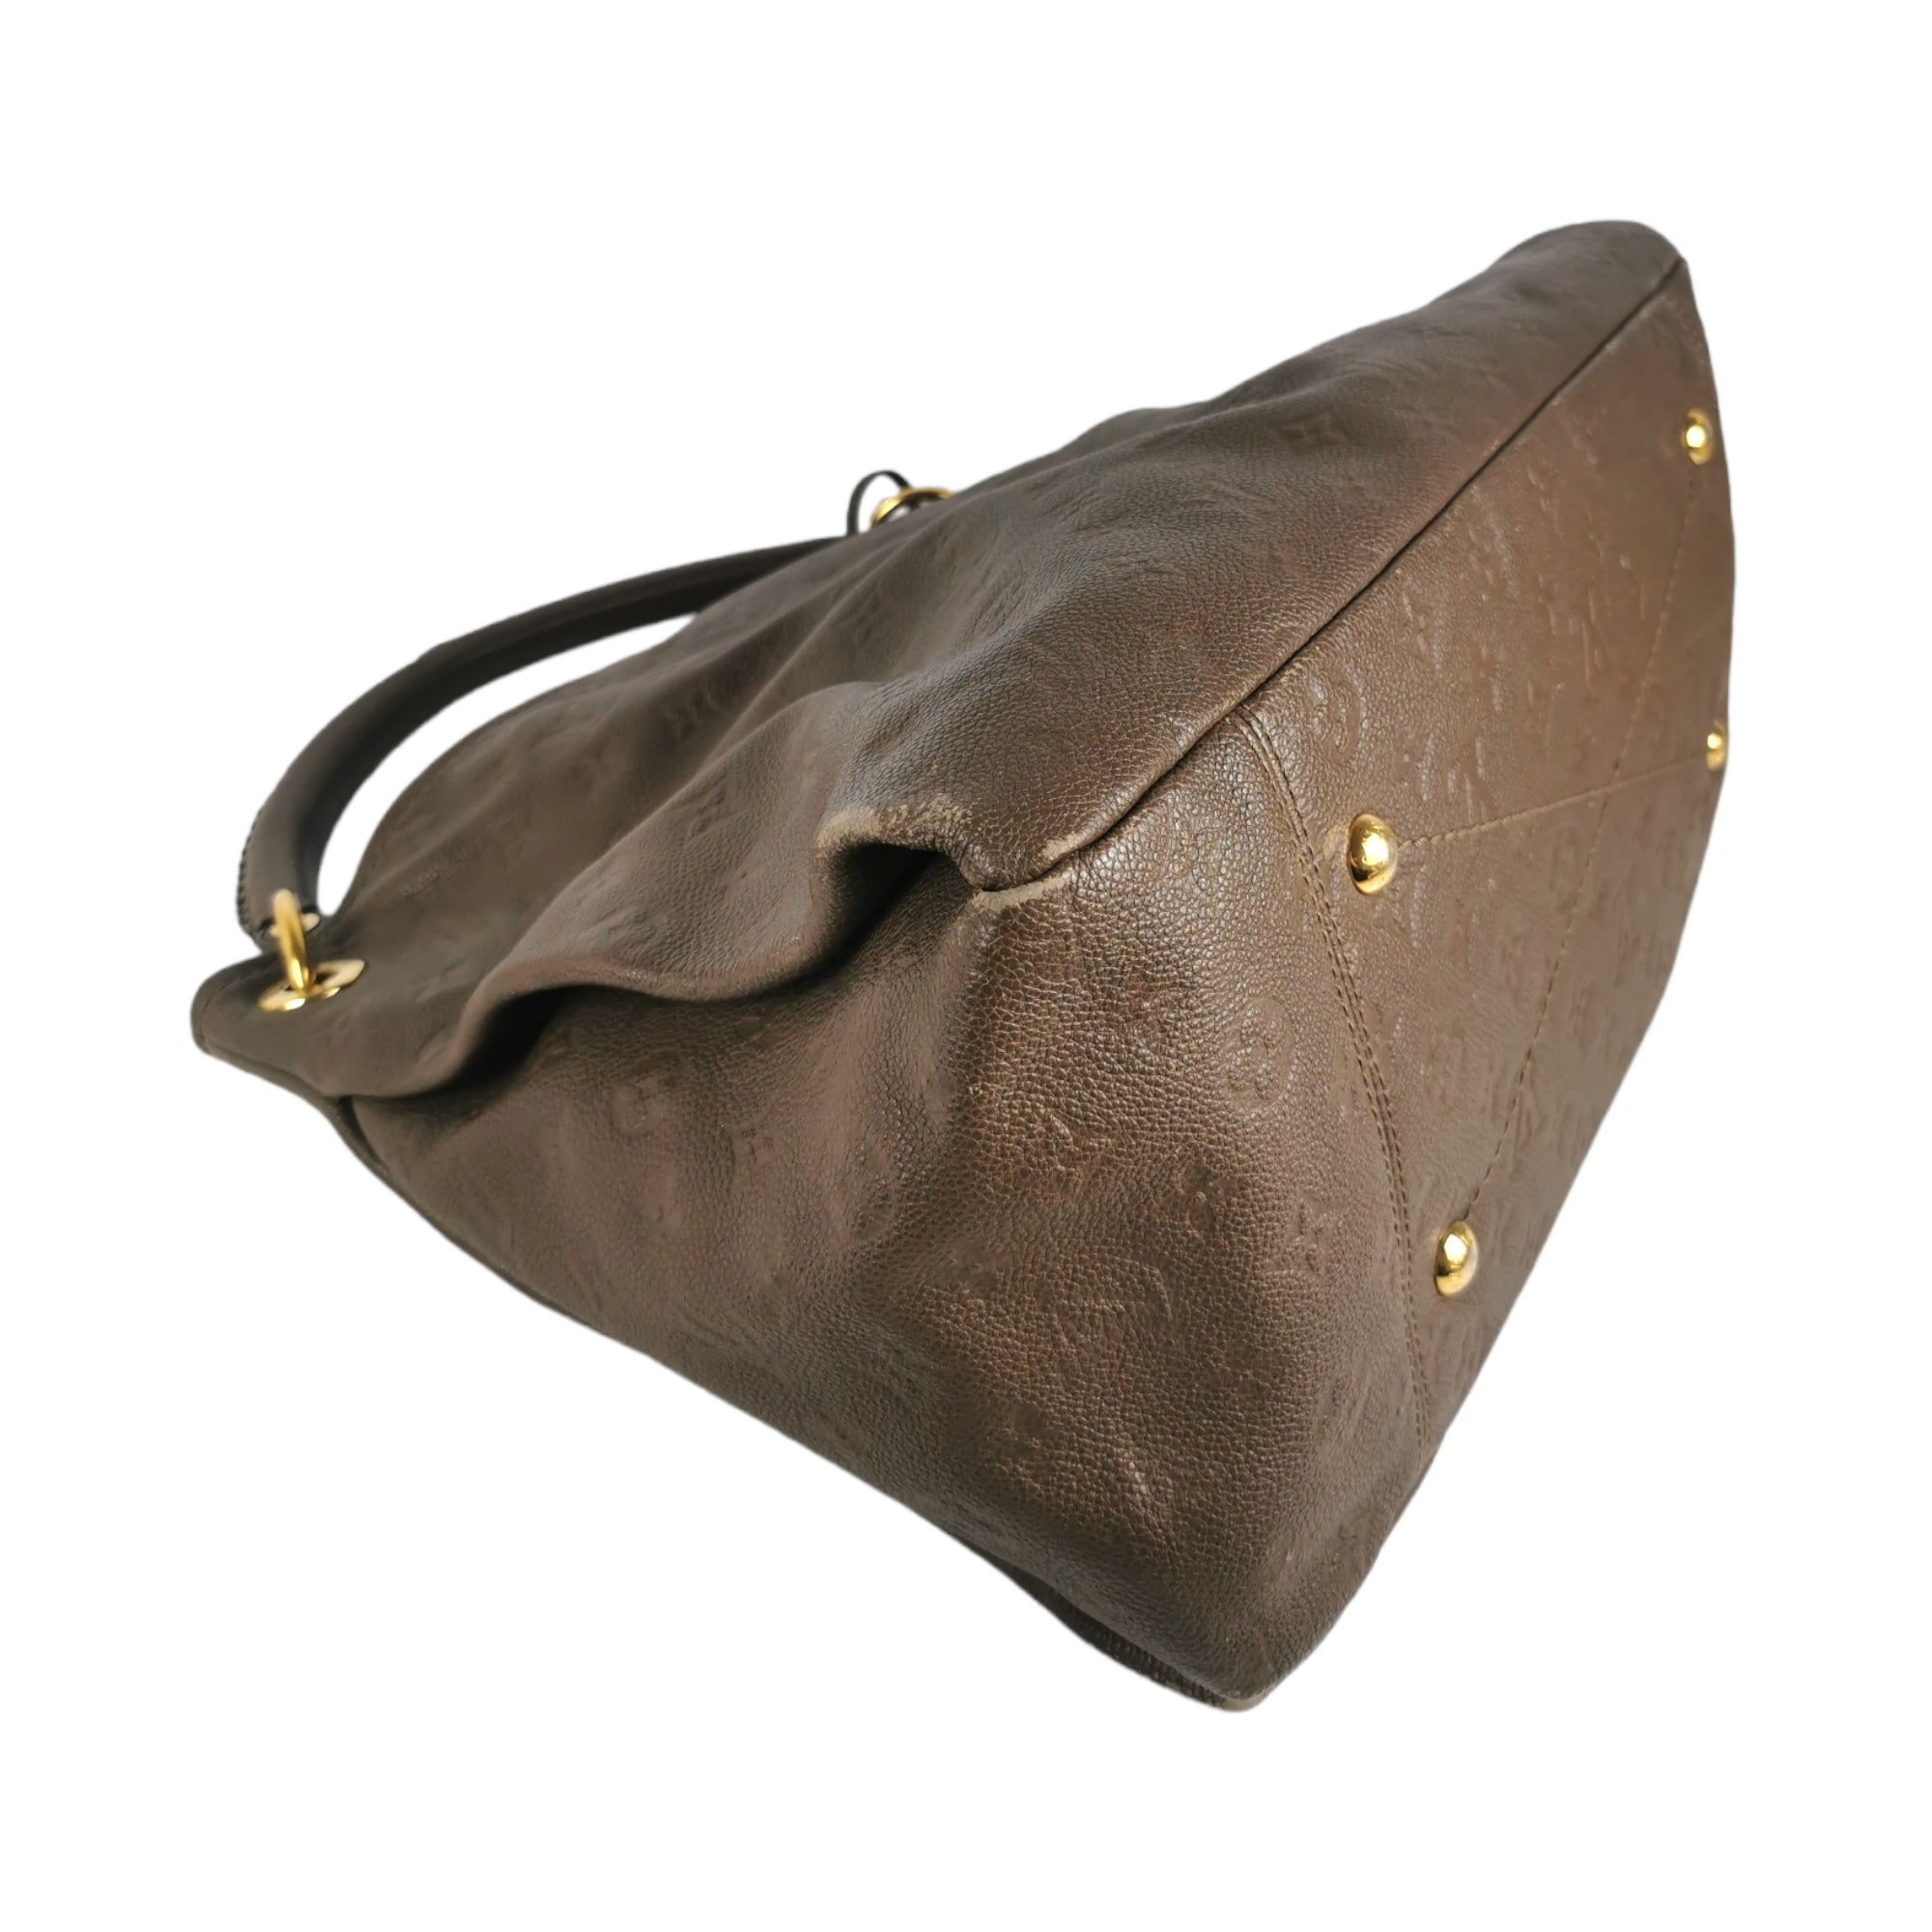 Authentic Louis Vuitton Artsy MM Ombré Brown Empreinte Leather Handbag  & Dustbag